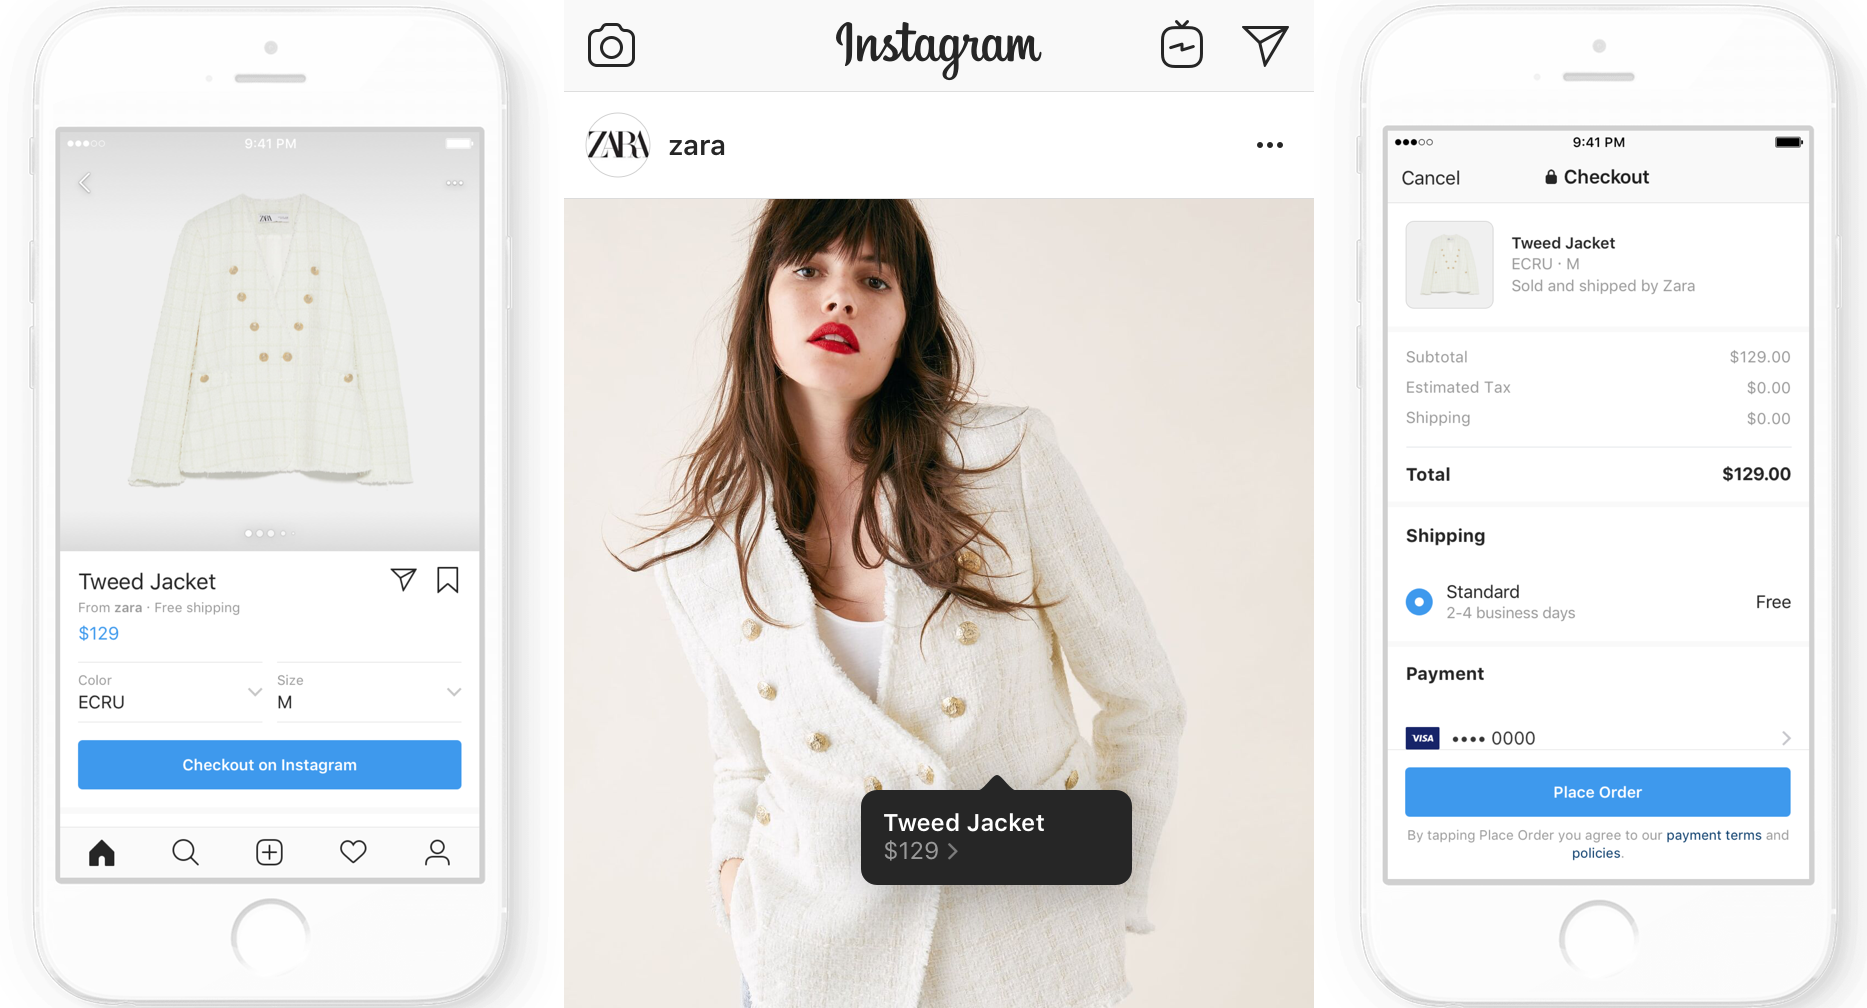 Checkout: Πλέον μπορείτε να αγοράζετε απευθείας προϊόντα στο Instagram